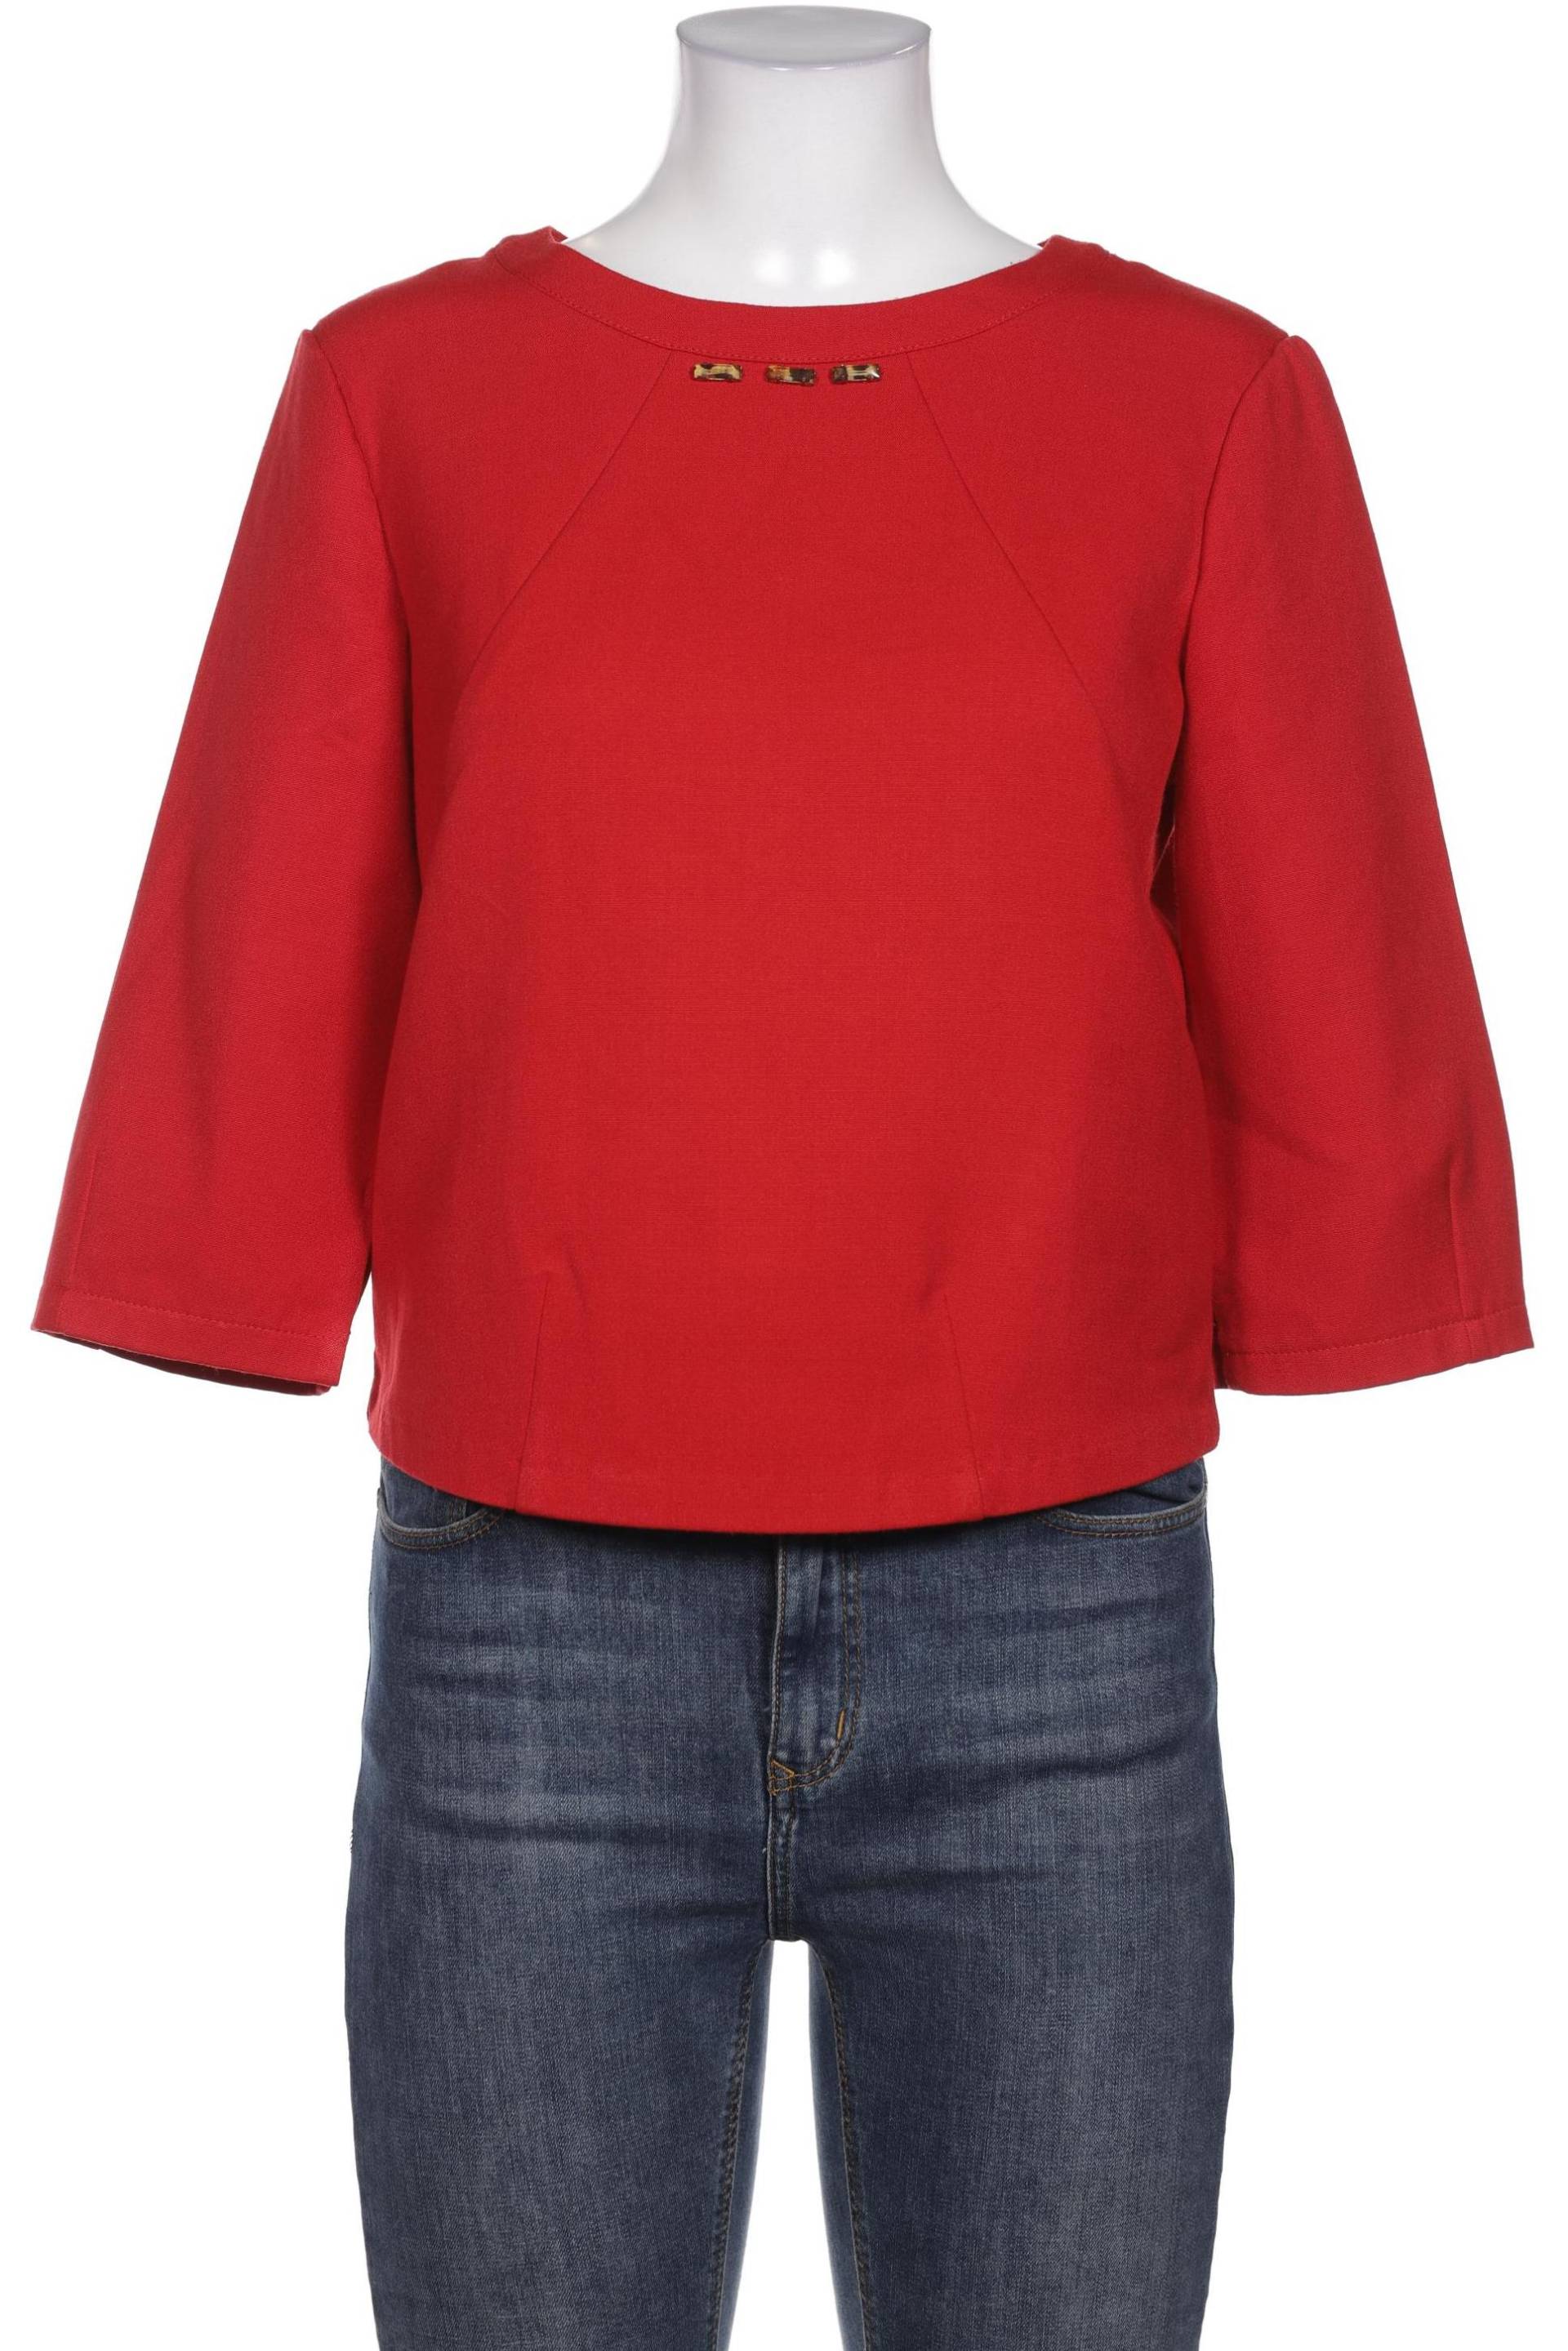 MAX&Co. Damen Bluse, rot von MAX&Co.